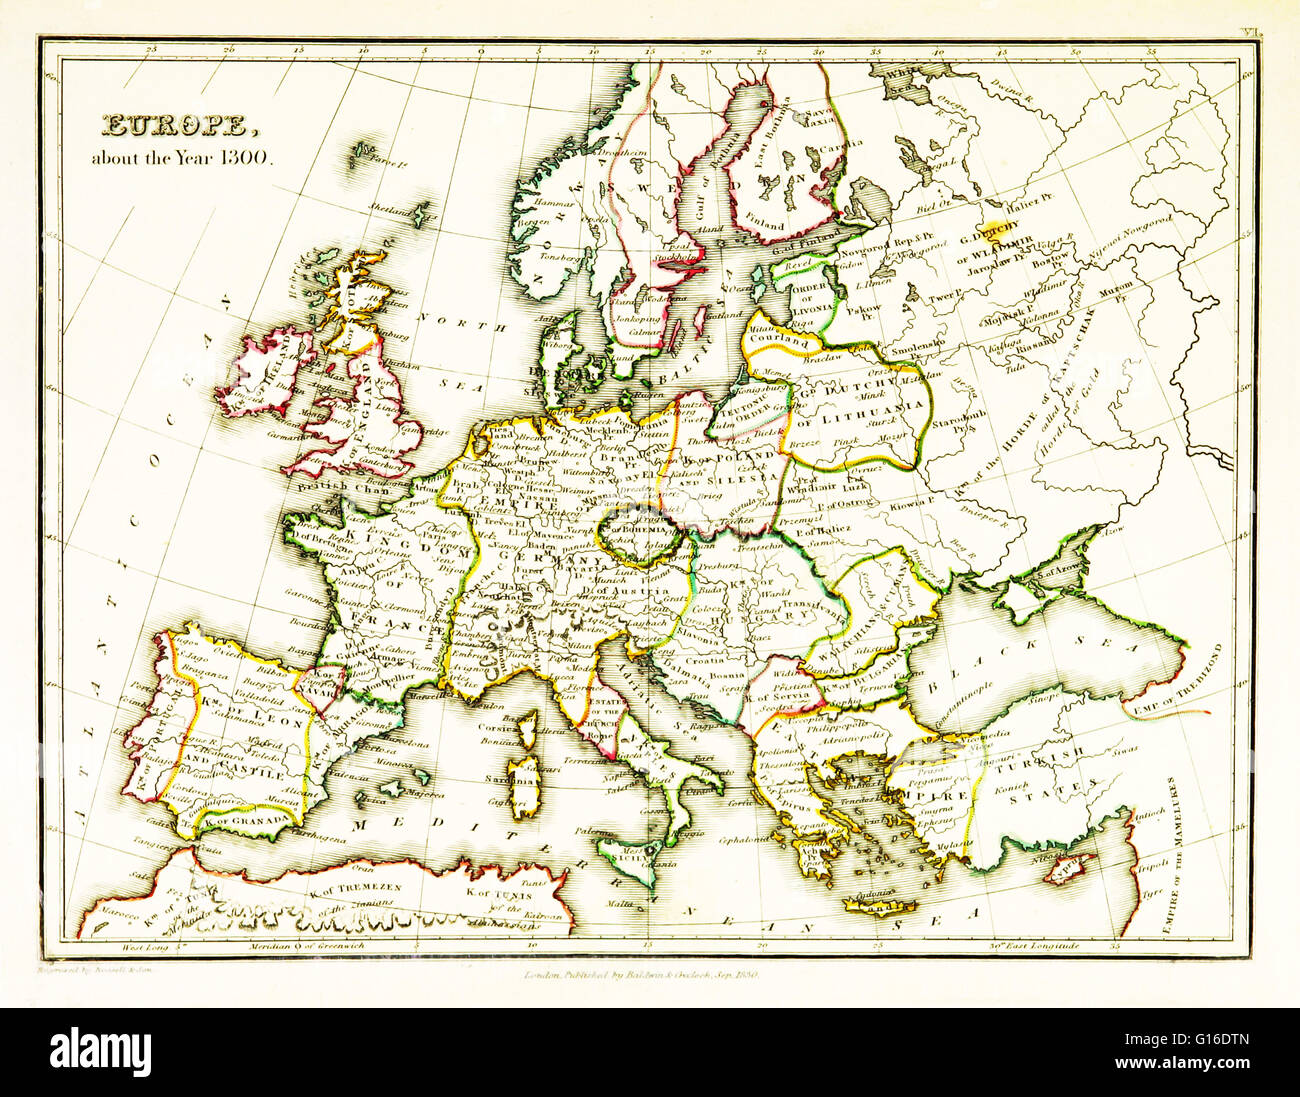 Une carte de l'Europe, montrant les frontières territoriales existant dans le 14e siècle, plus précisément de 1300. Carte publiée en 1831. Banque D'Images